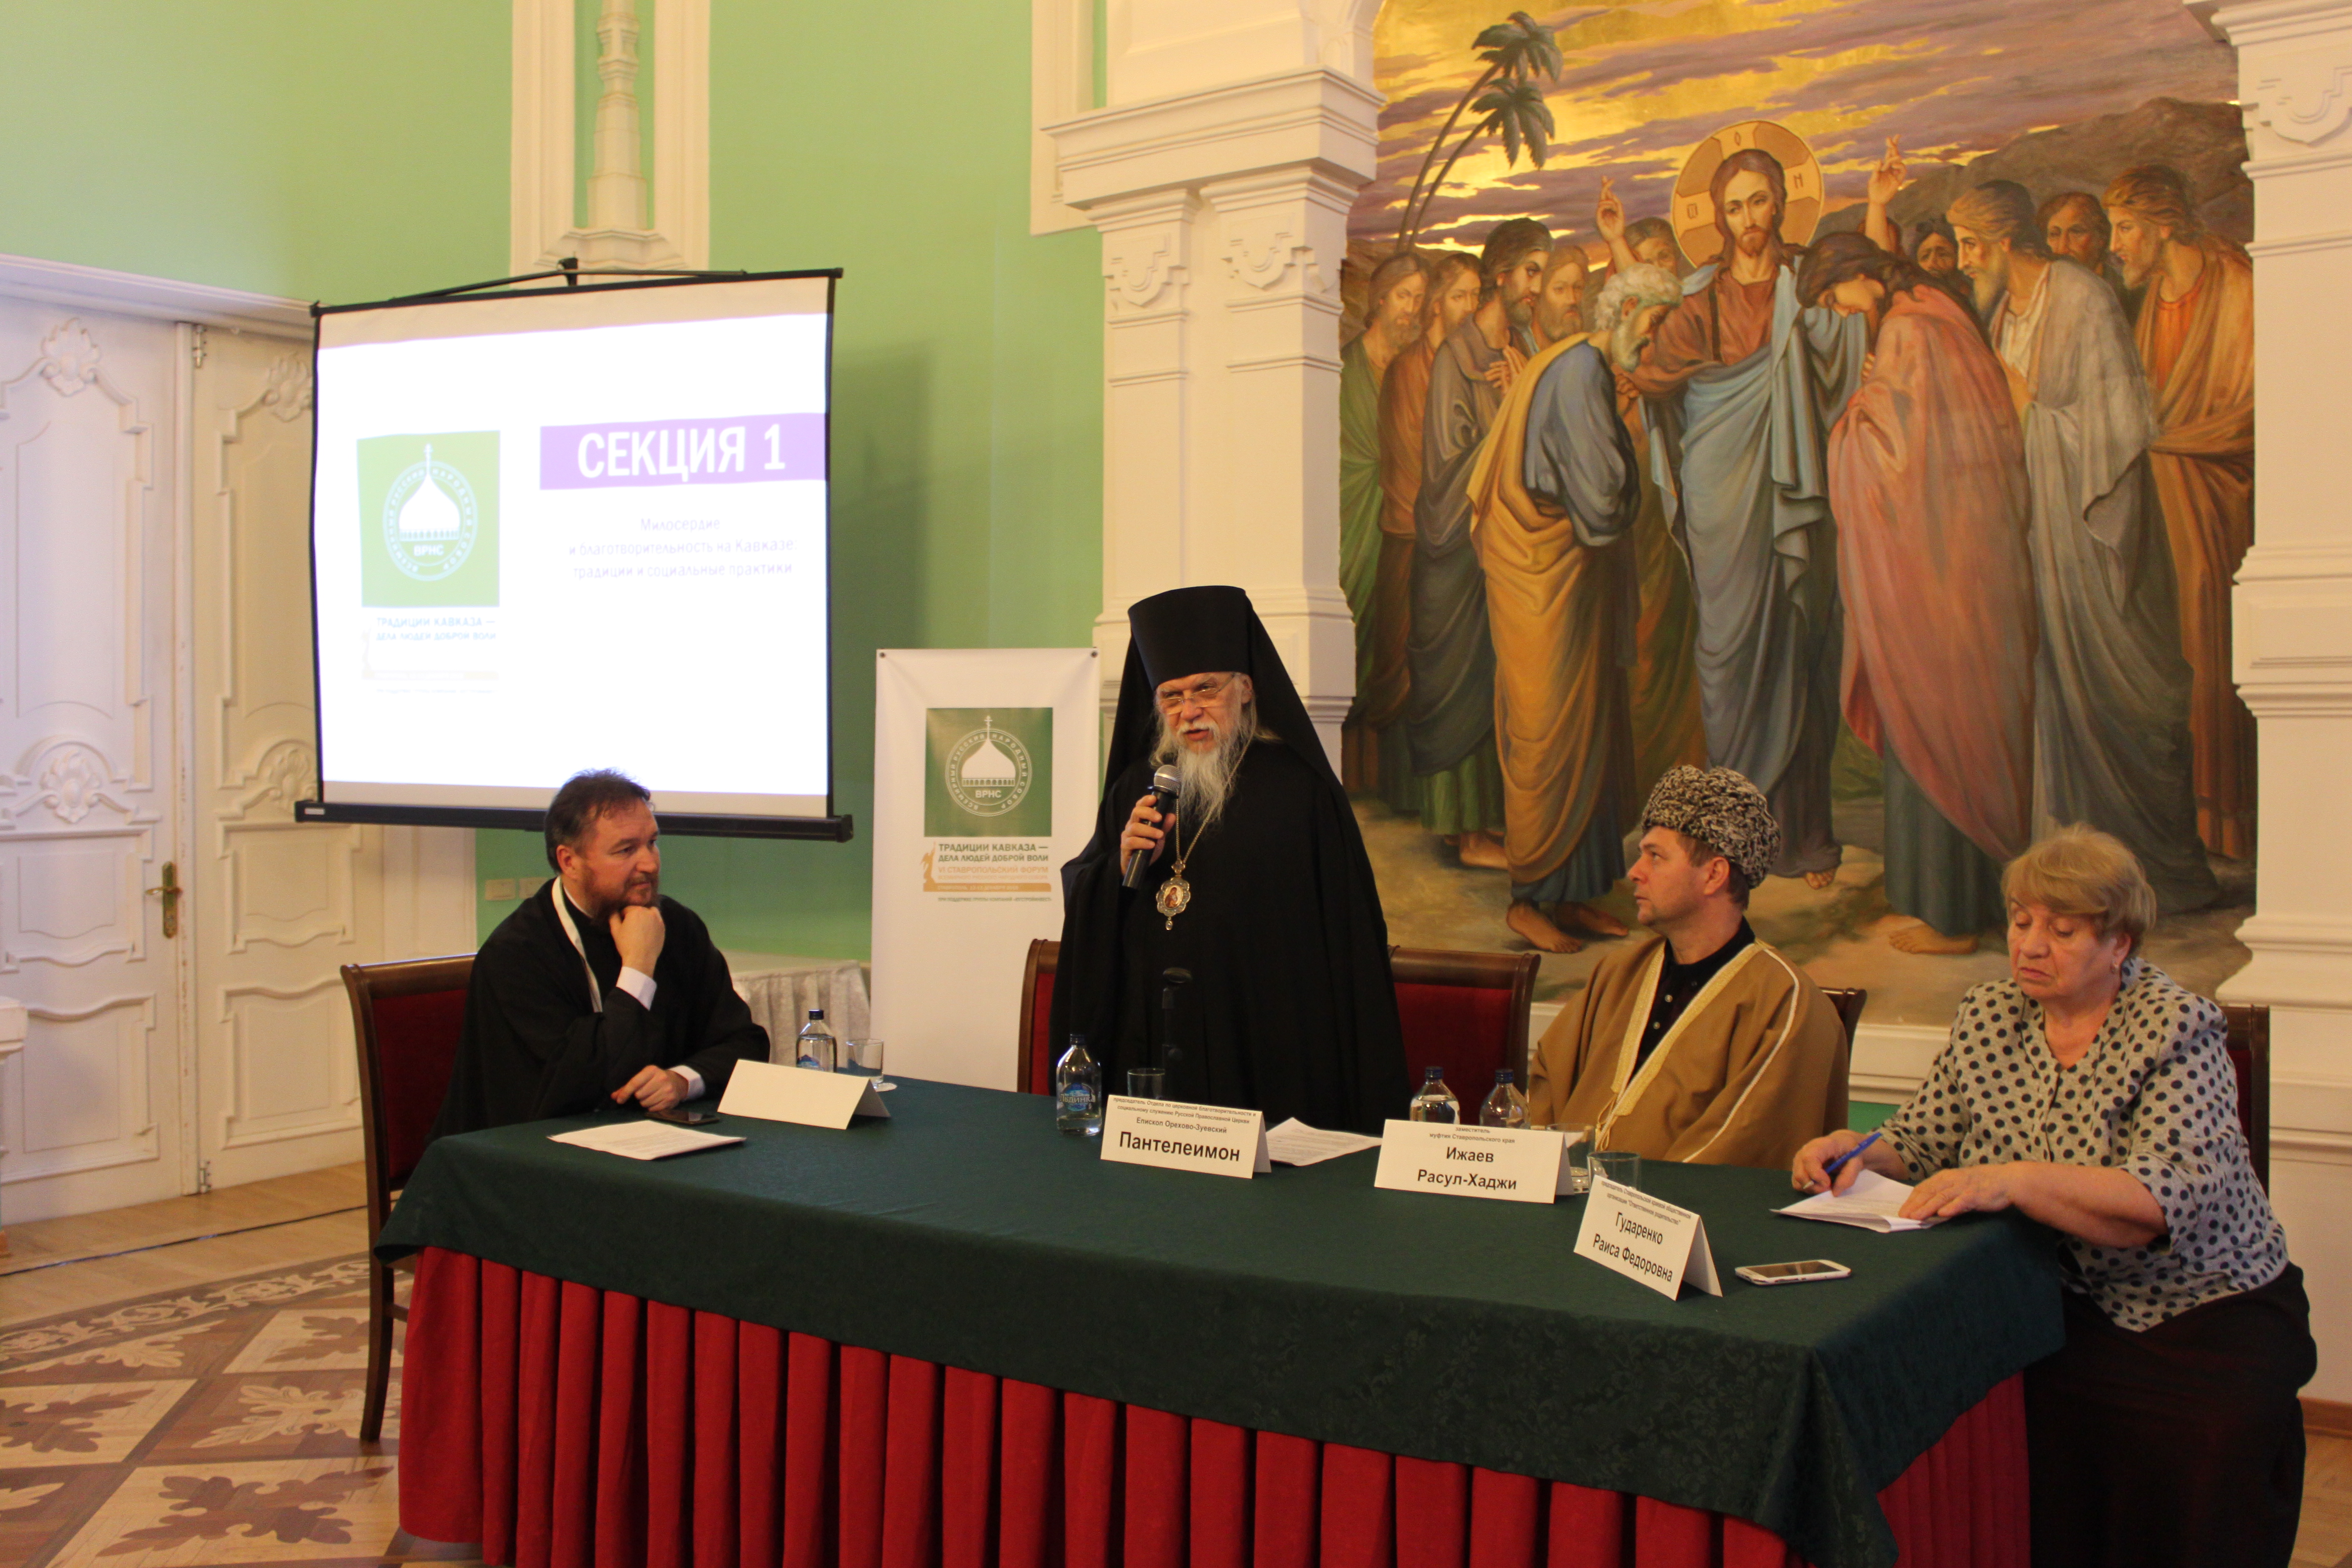 Епископ Орехово-Зуевский Пантелеимон открыл секцию о милосердии и благотворительности на Кавказе